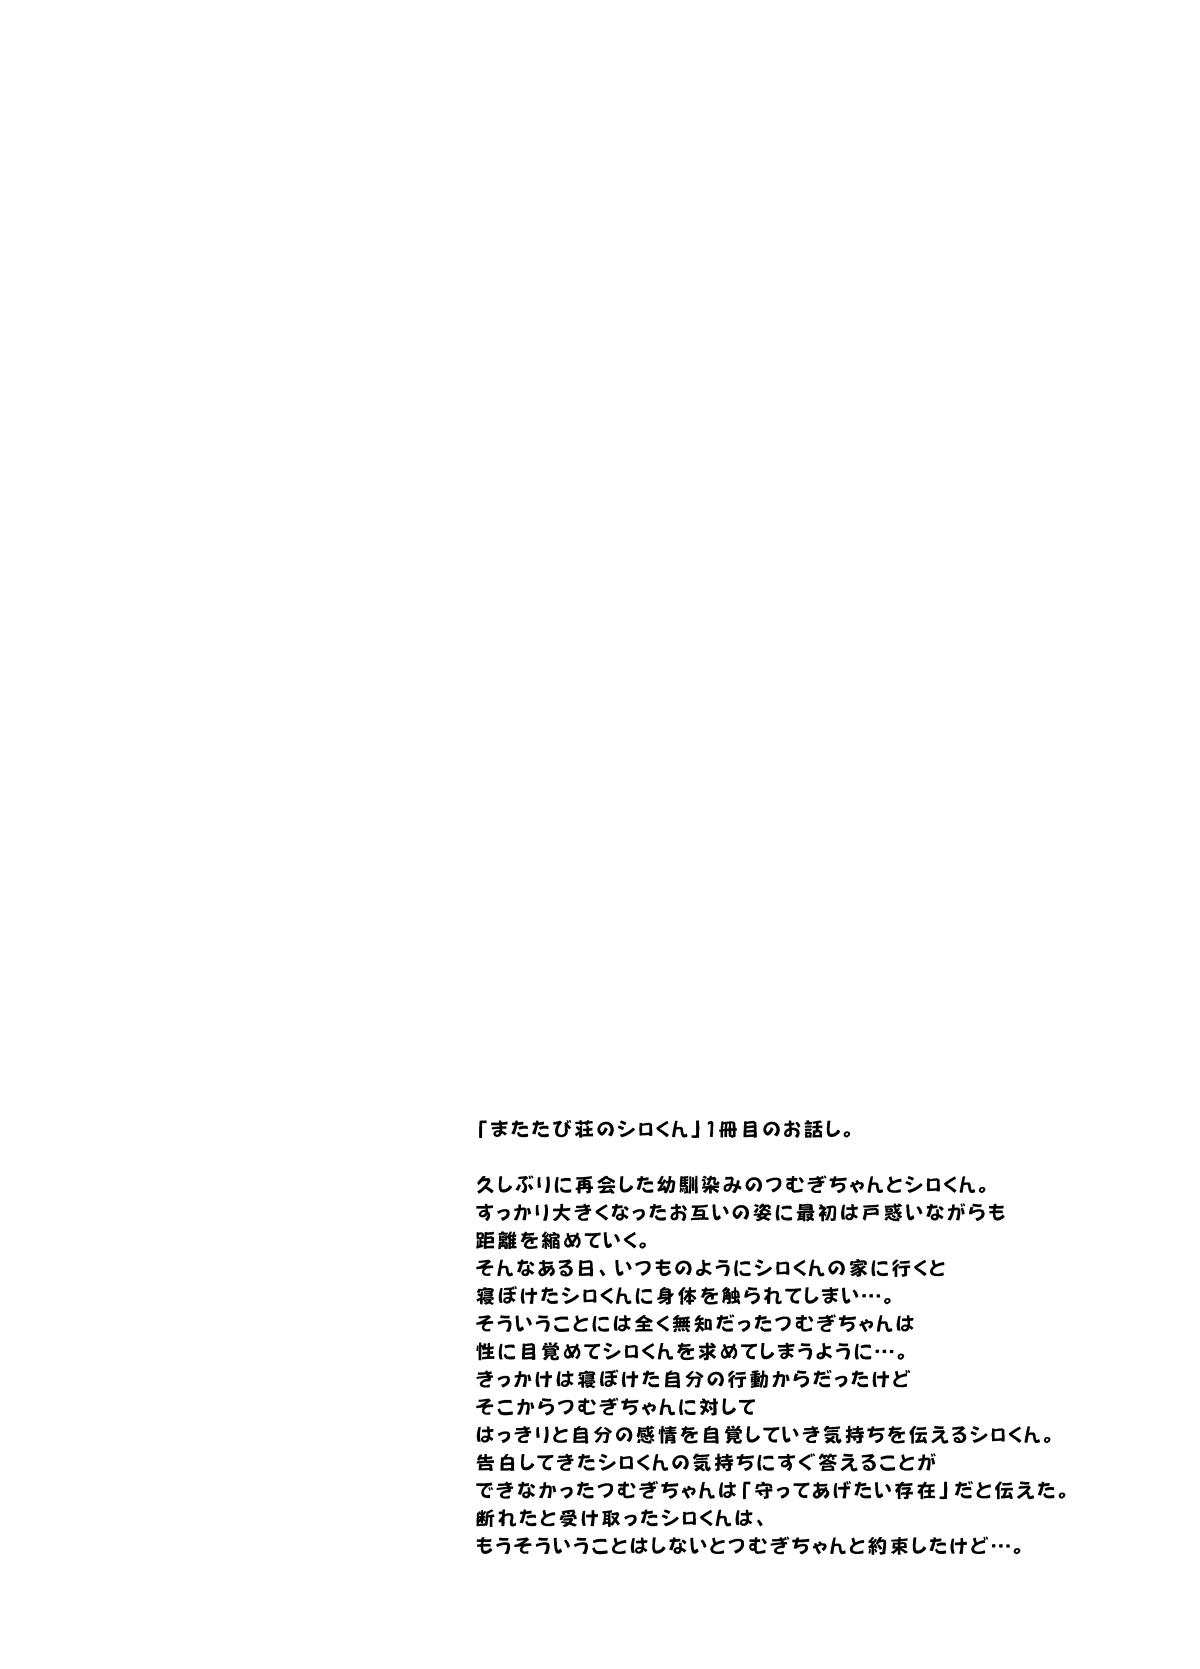 [Ssaizu (shinachiku)] matatabisounoshirokun-hajimetenoodekaketo、sorekara…  [DLVersion][XLOTranslation].zip 2